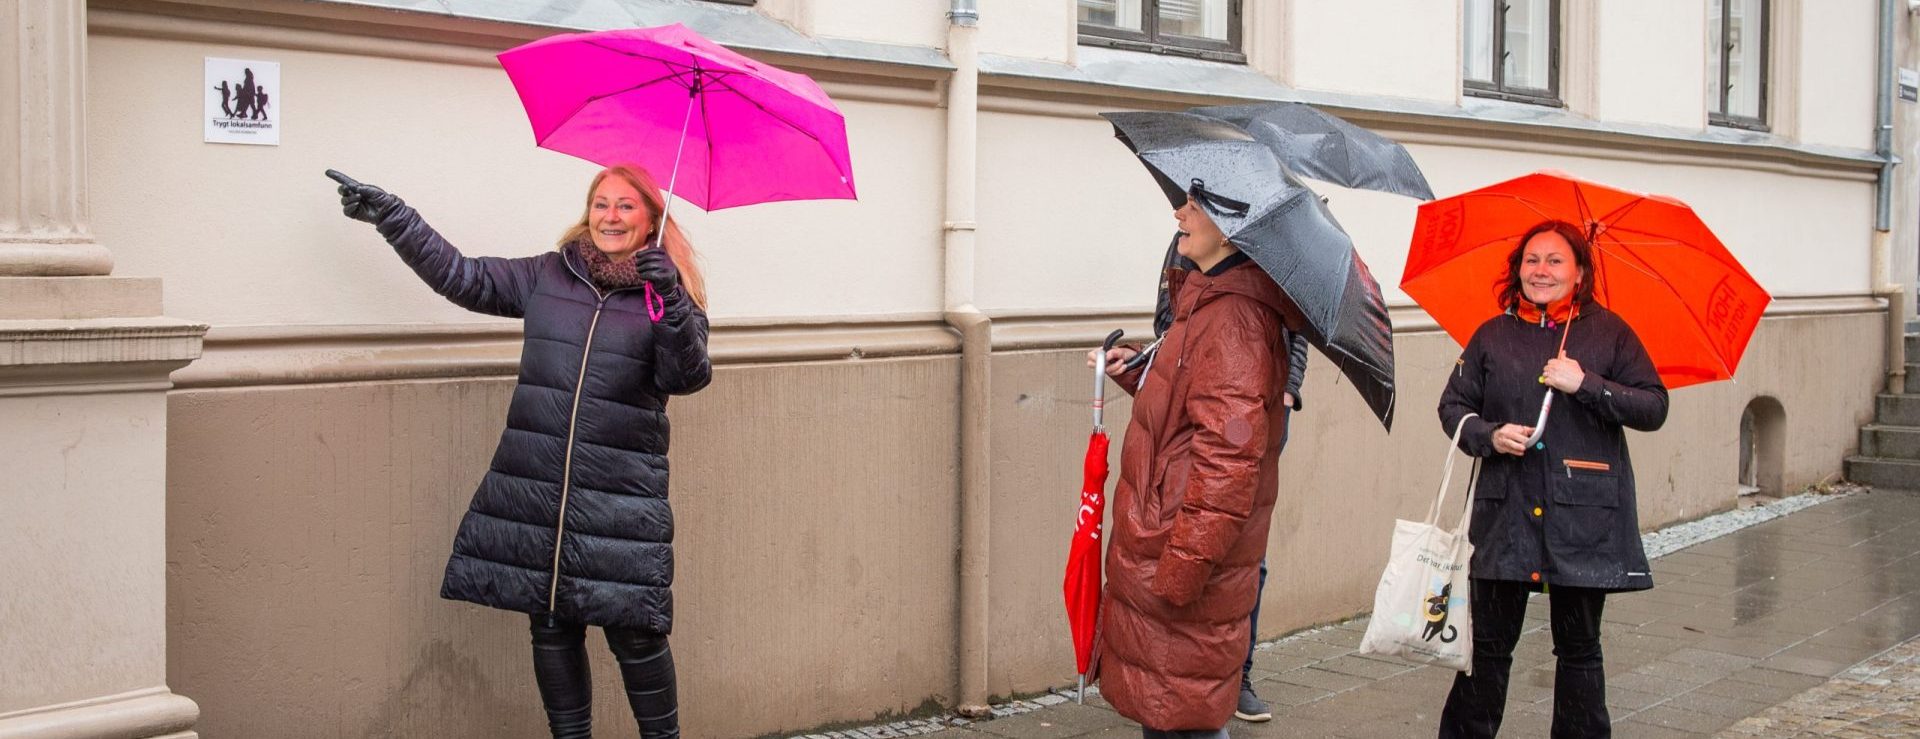 Tre kvinner fra Trygge lokalsamfunn med paraplyer ser mot et skilt. Den ene damen peker på skiltet. Foto.